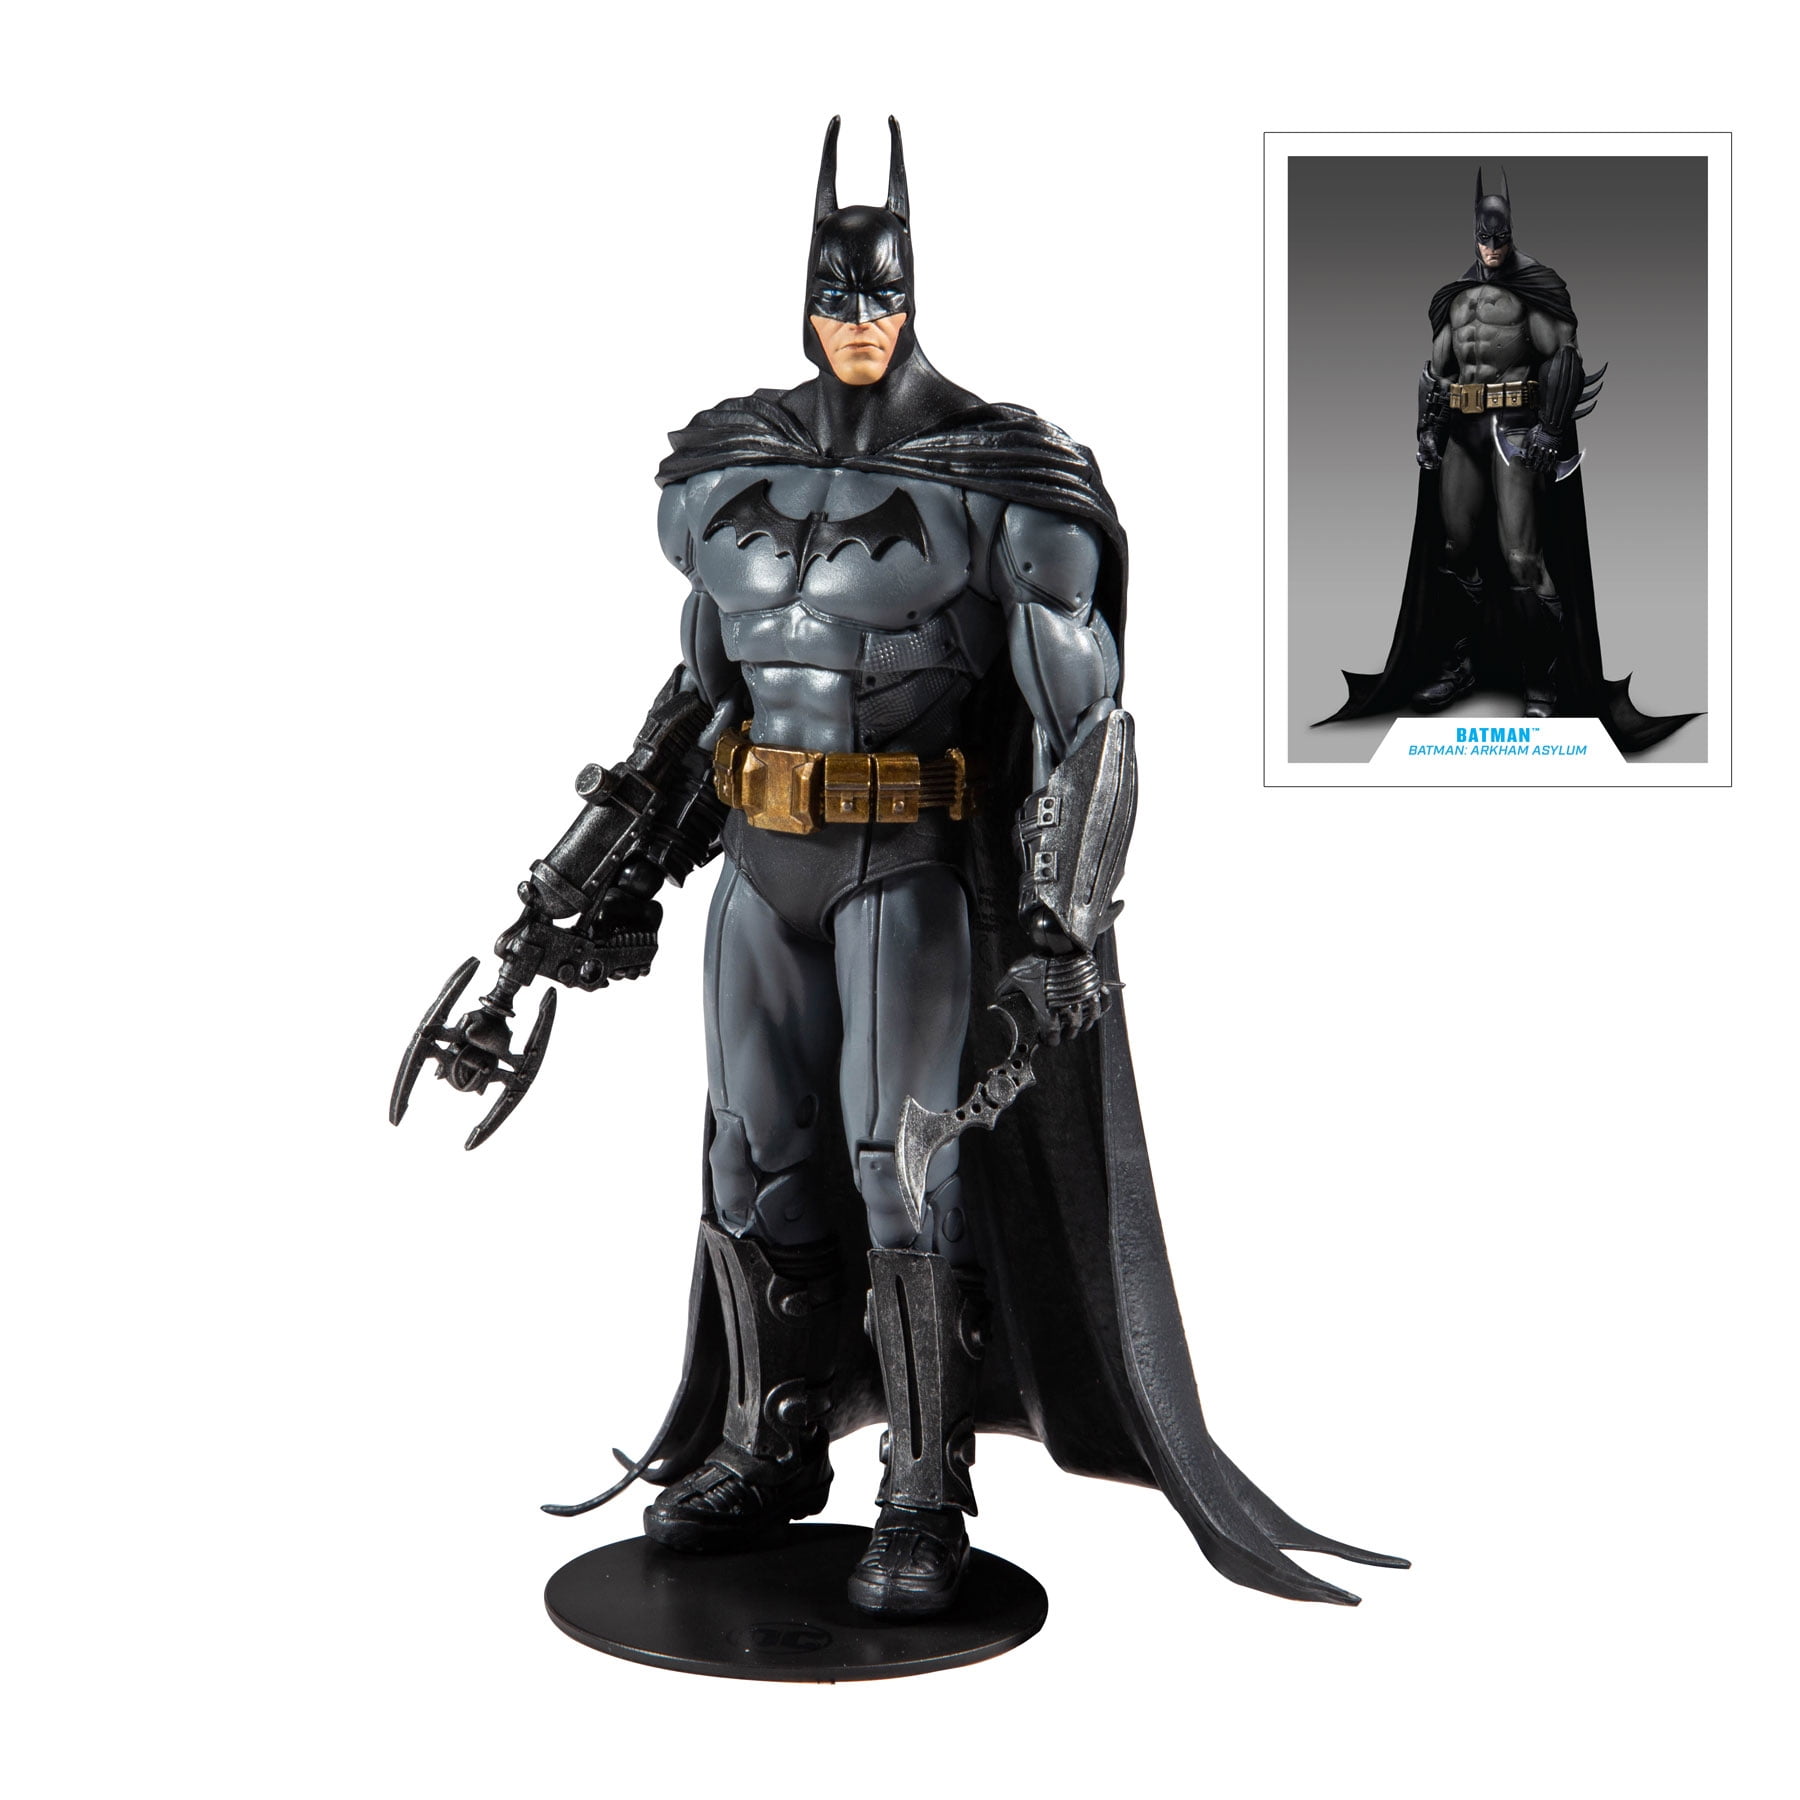 McFarlane Toys DC Multiverse Arkham Asylum Batman Action Figure